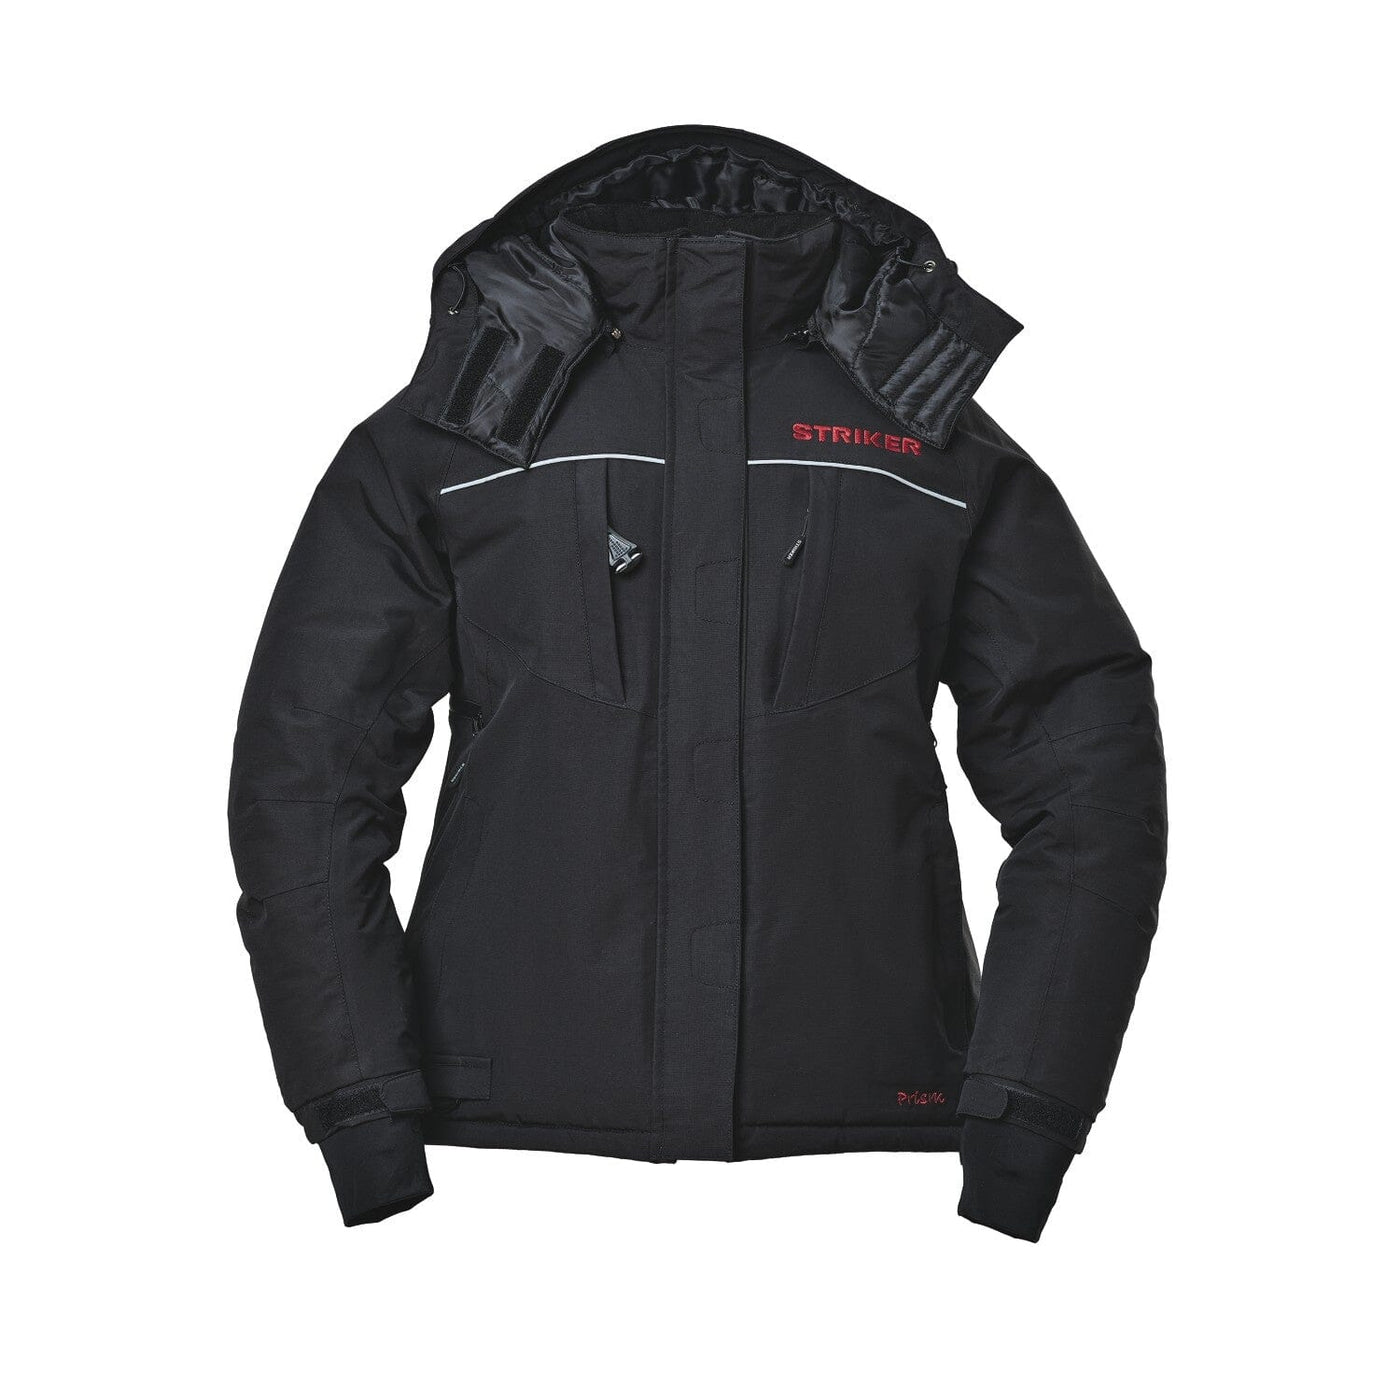 StrikerICE® Women's Prism Ice Fishing Jacket Clothing Striker Black XS 